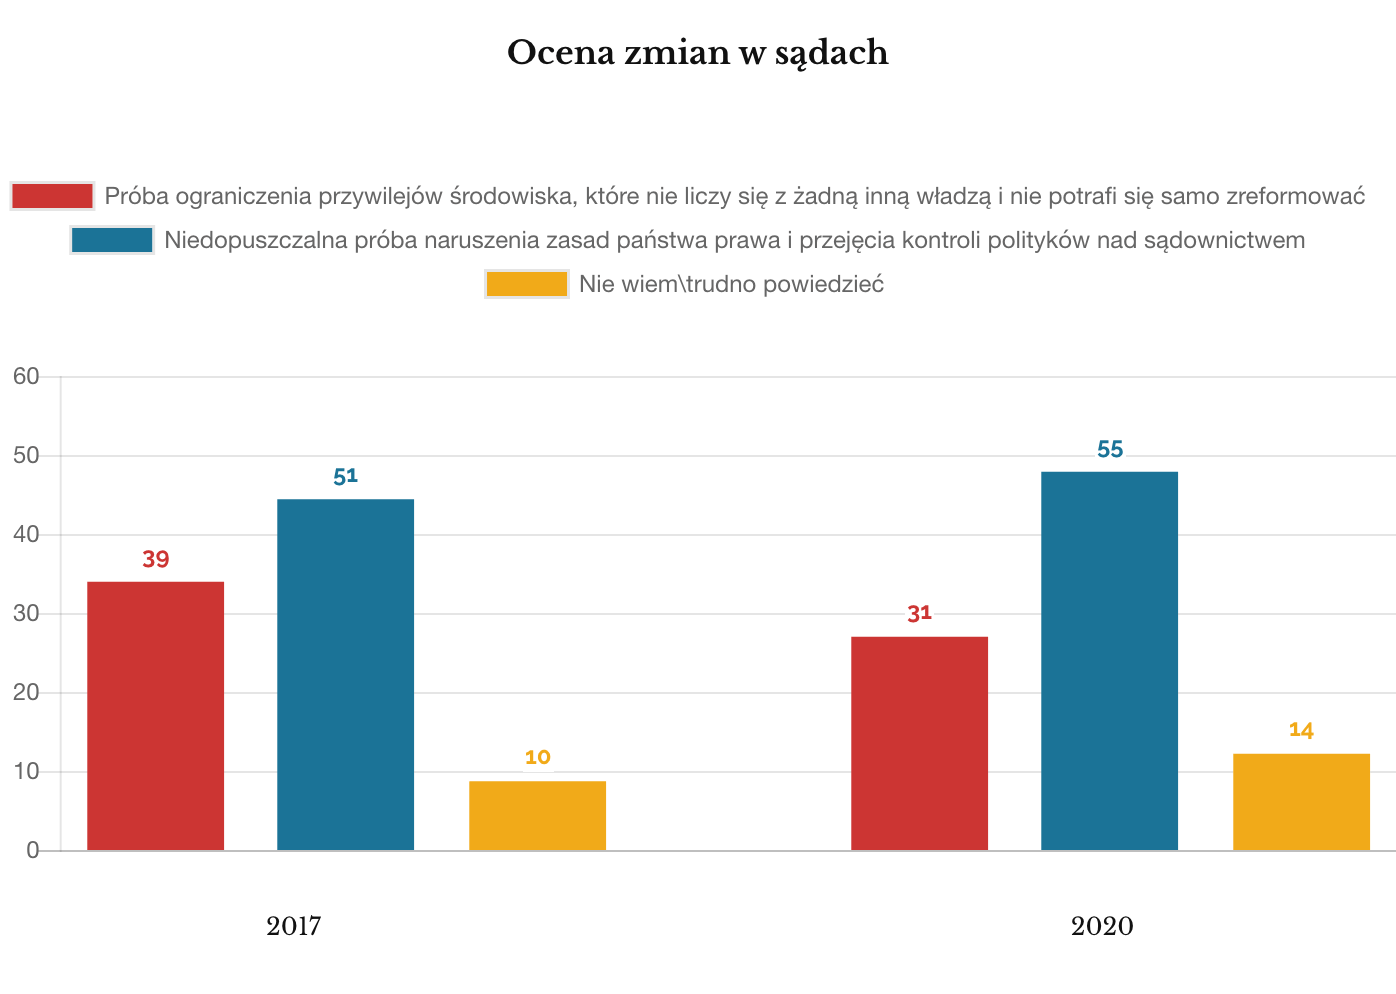 Ipsos, marzec 2020. Porównanie: Ocena zmian w sądach 2017 i 2020